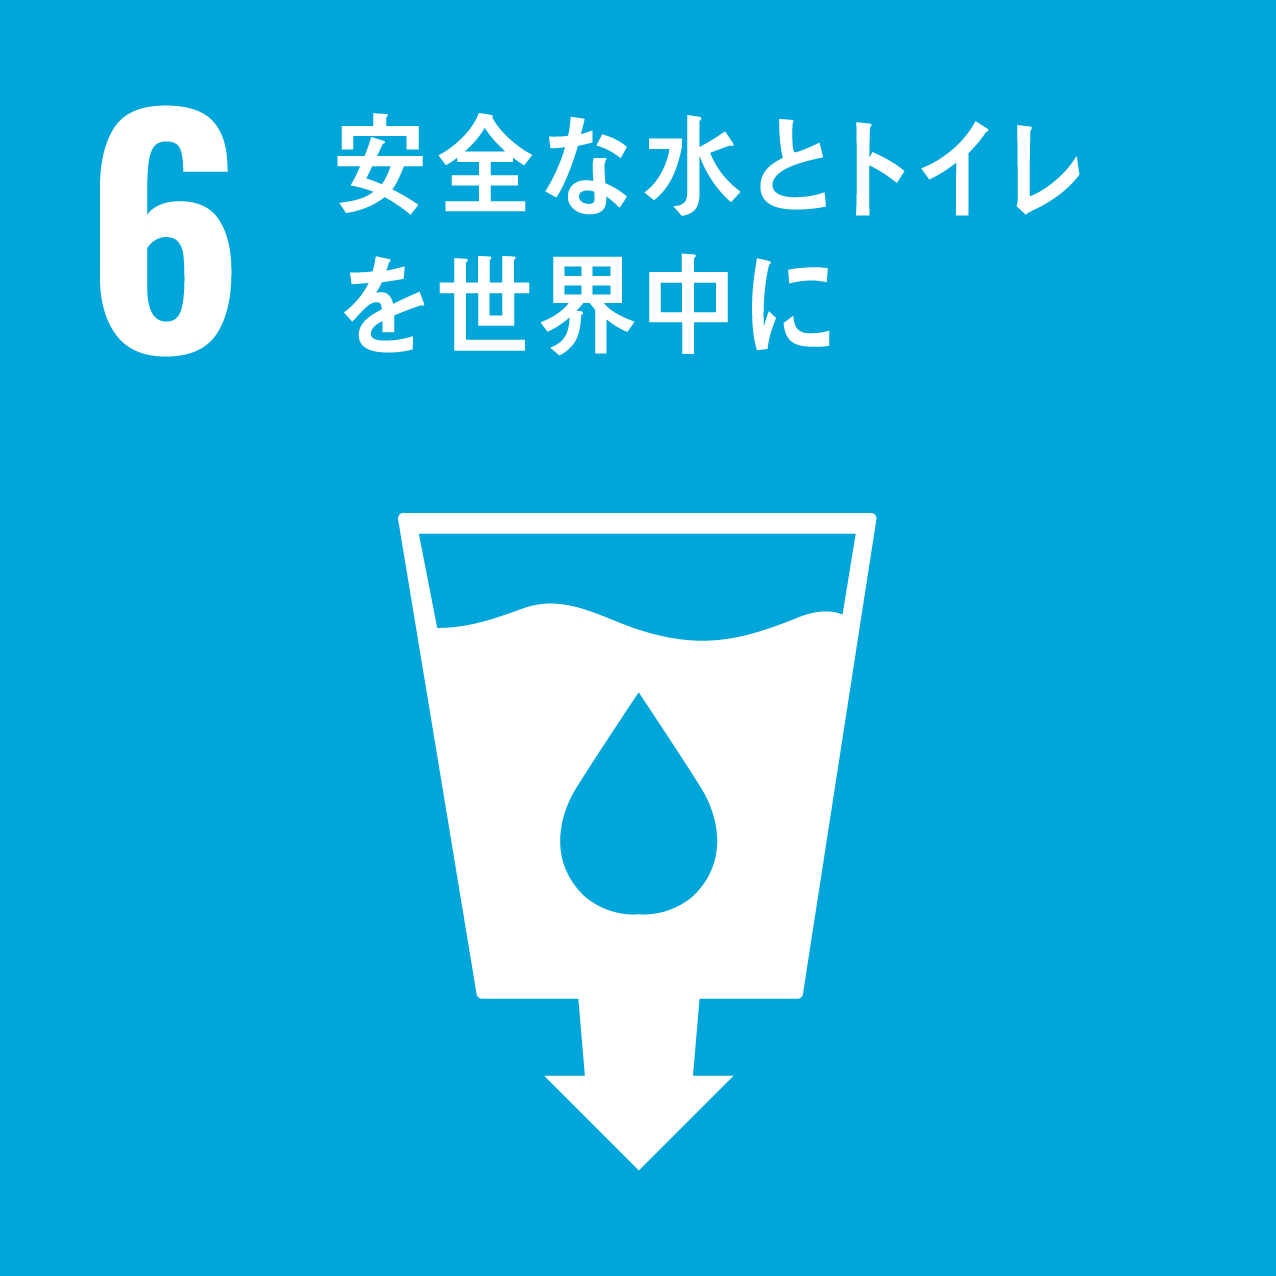 目標6.安全な水とトイレを世界中に